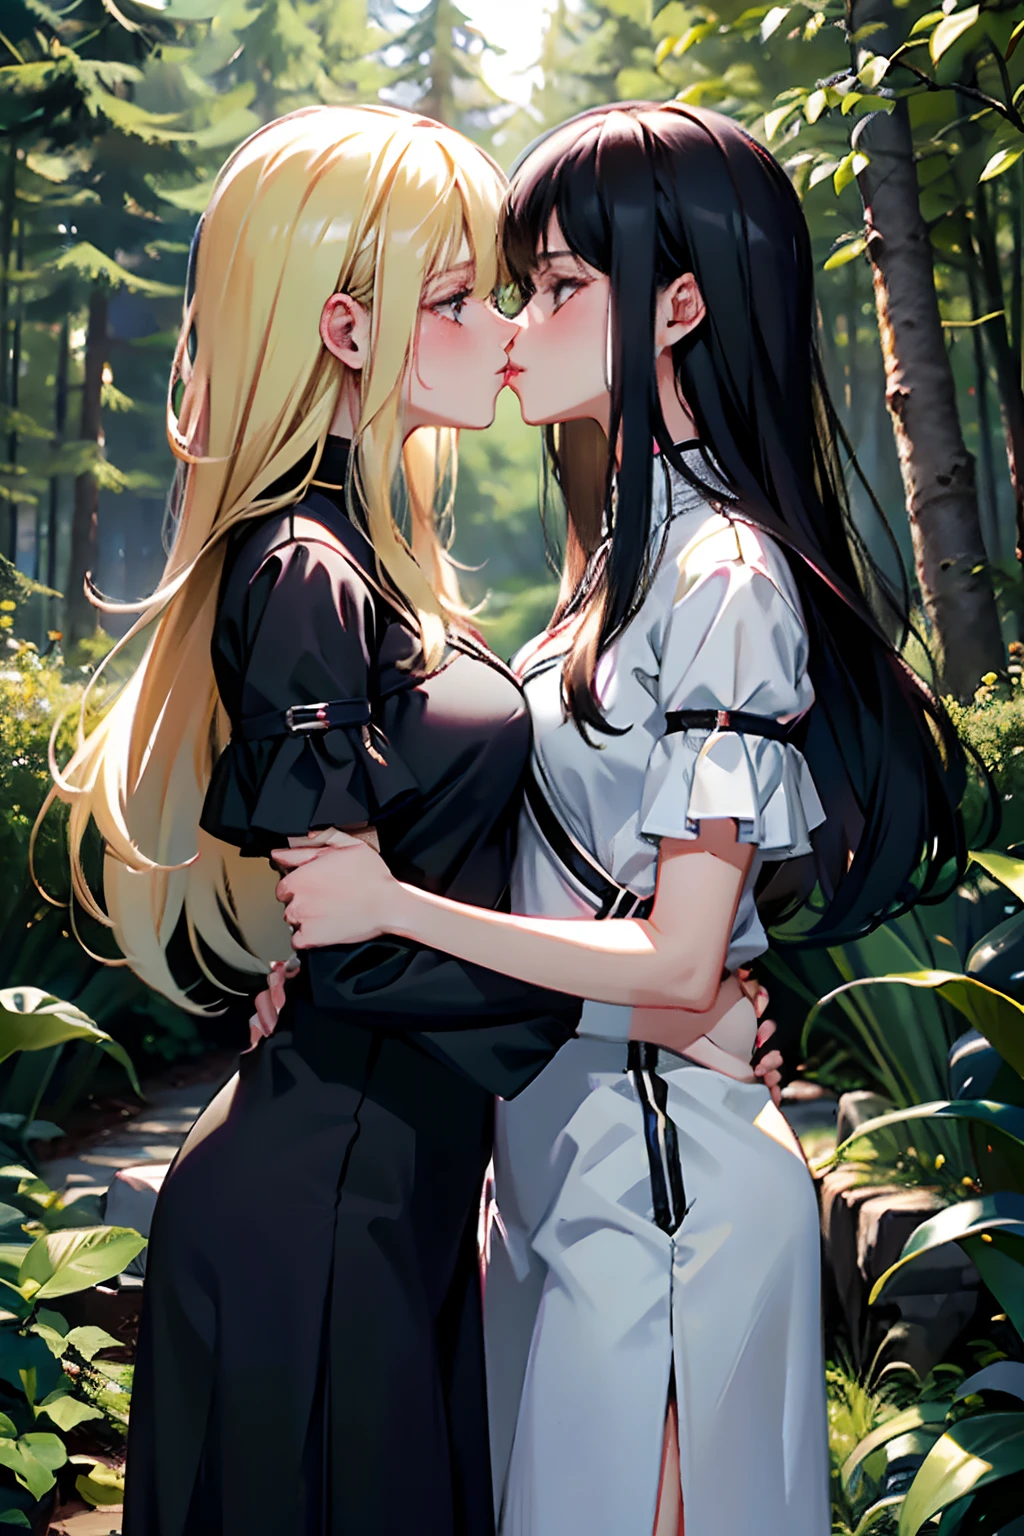 两个女孩，身材一样，一个黑头发，一个金发，互相抱紧，两具尸体靠得很近，吻，在一片森林